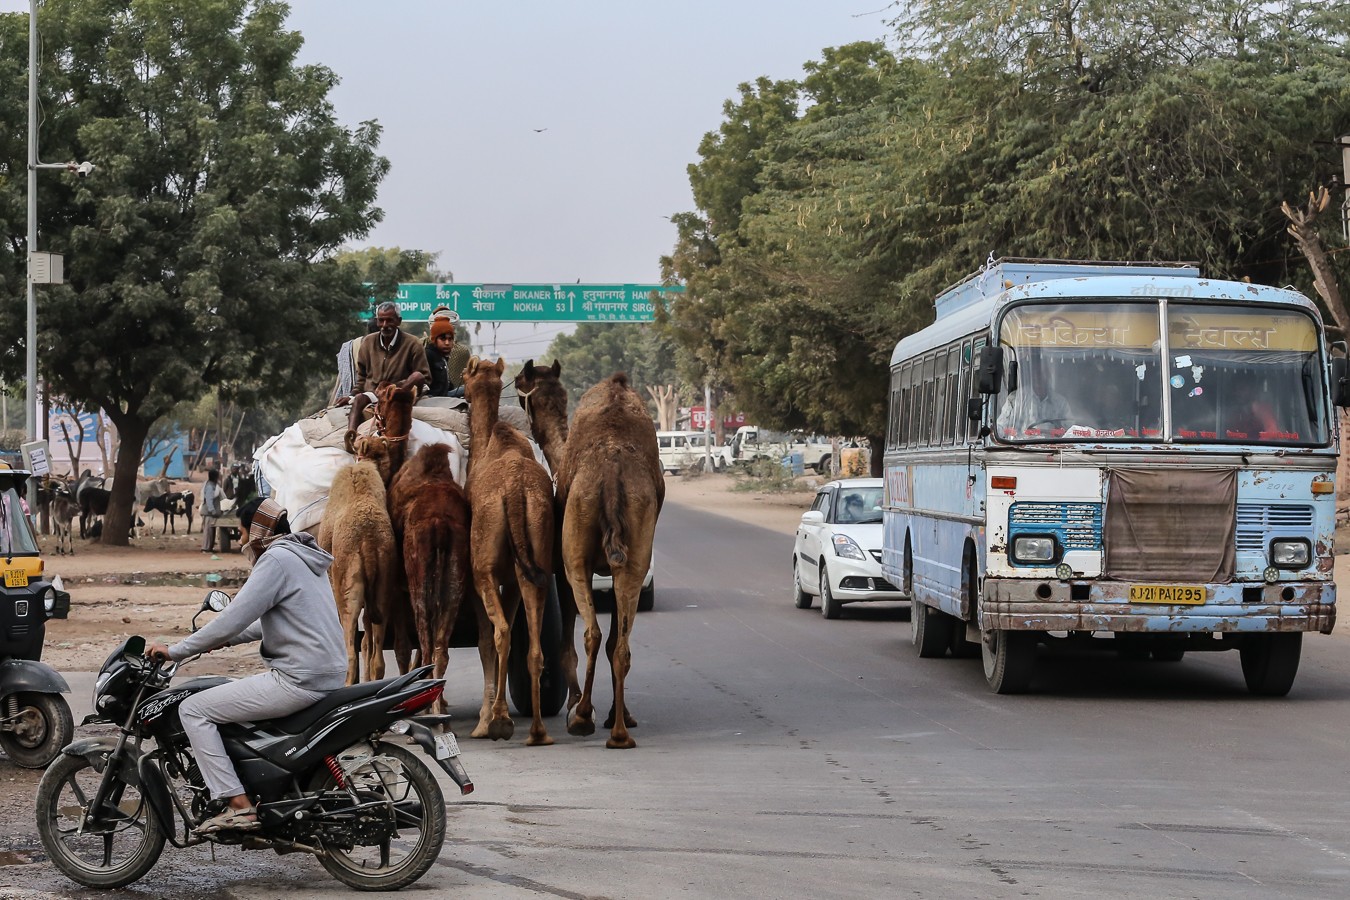 Kamelhändler, Bikaner Rajasthan, Indien